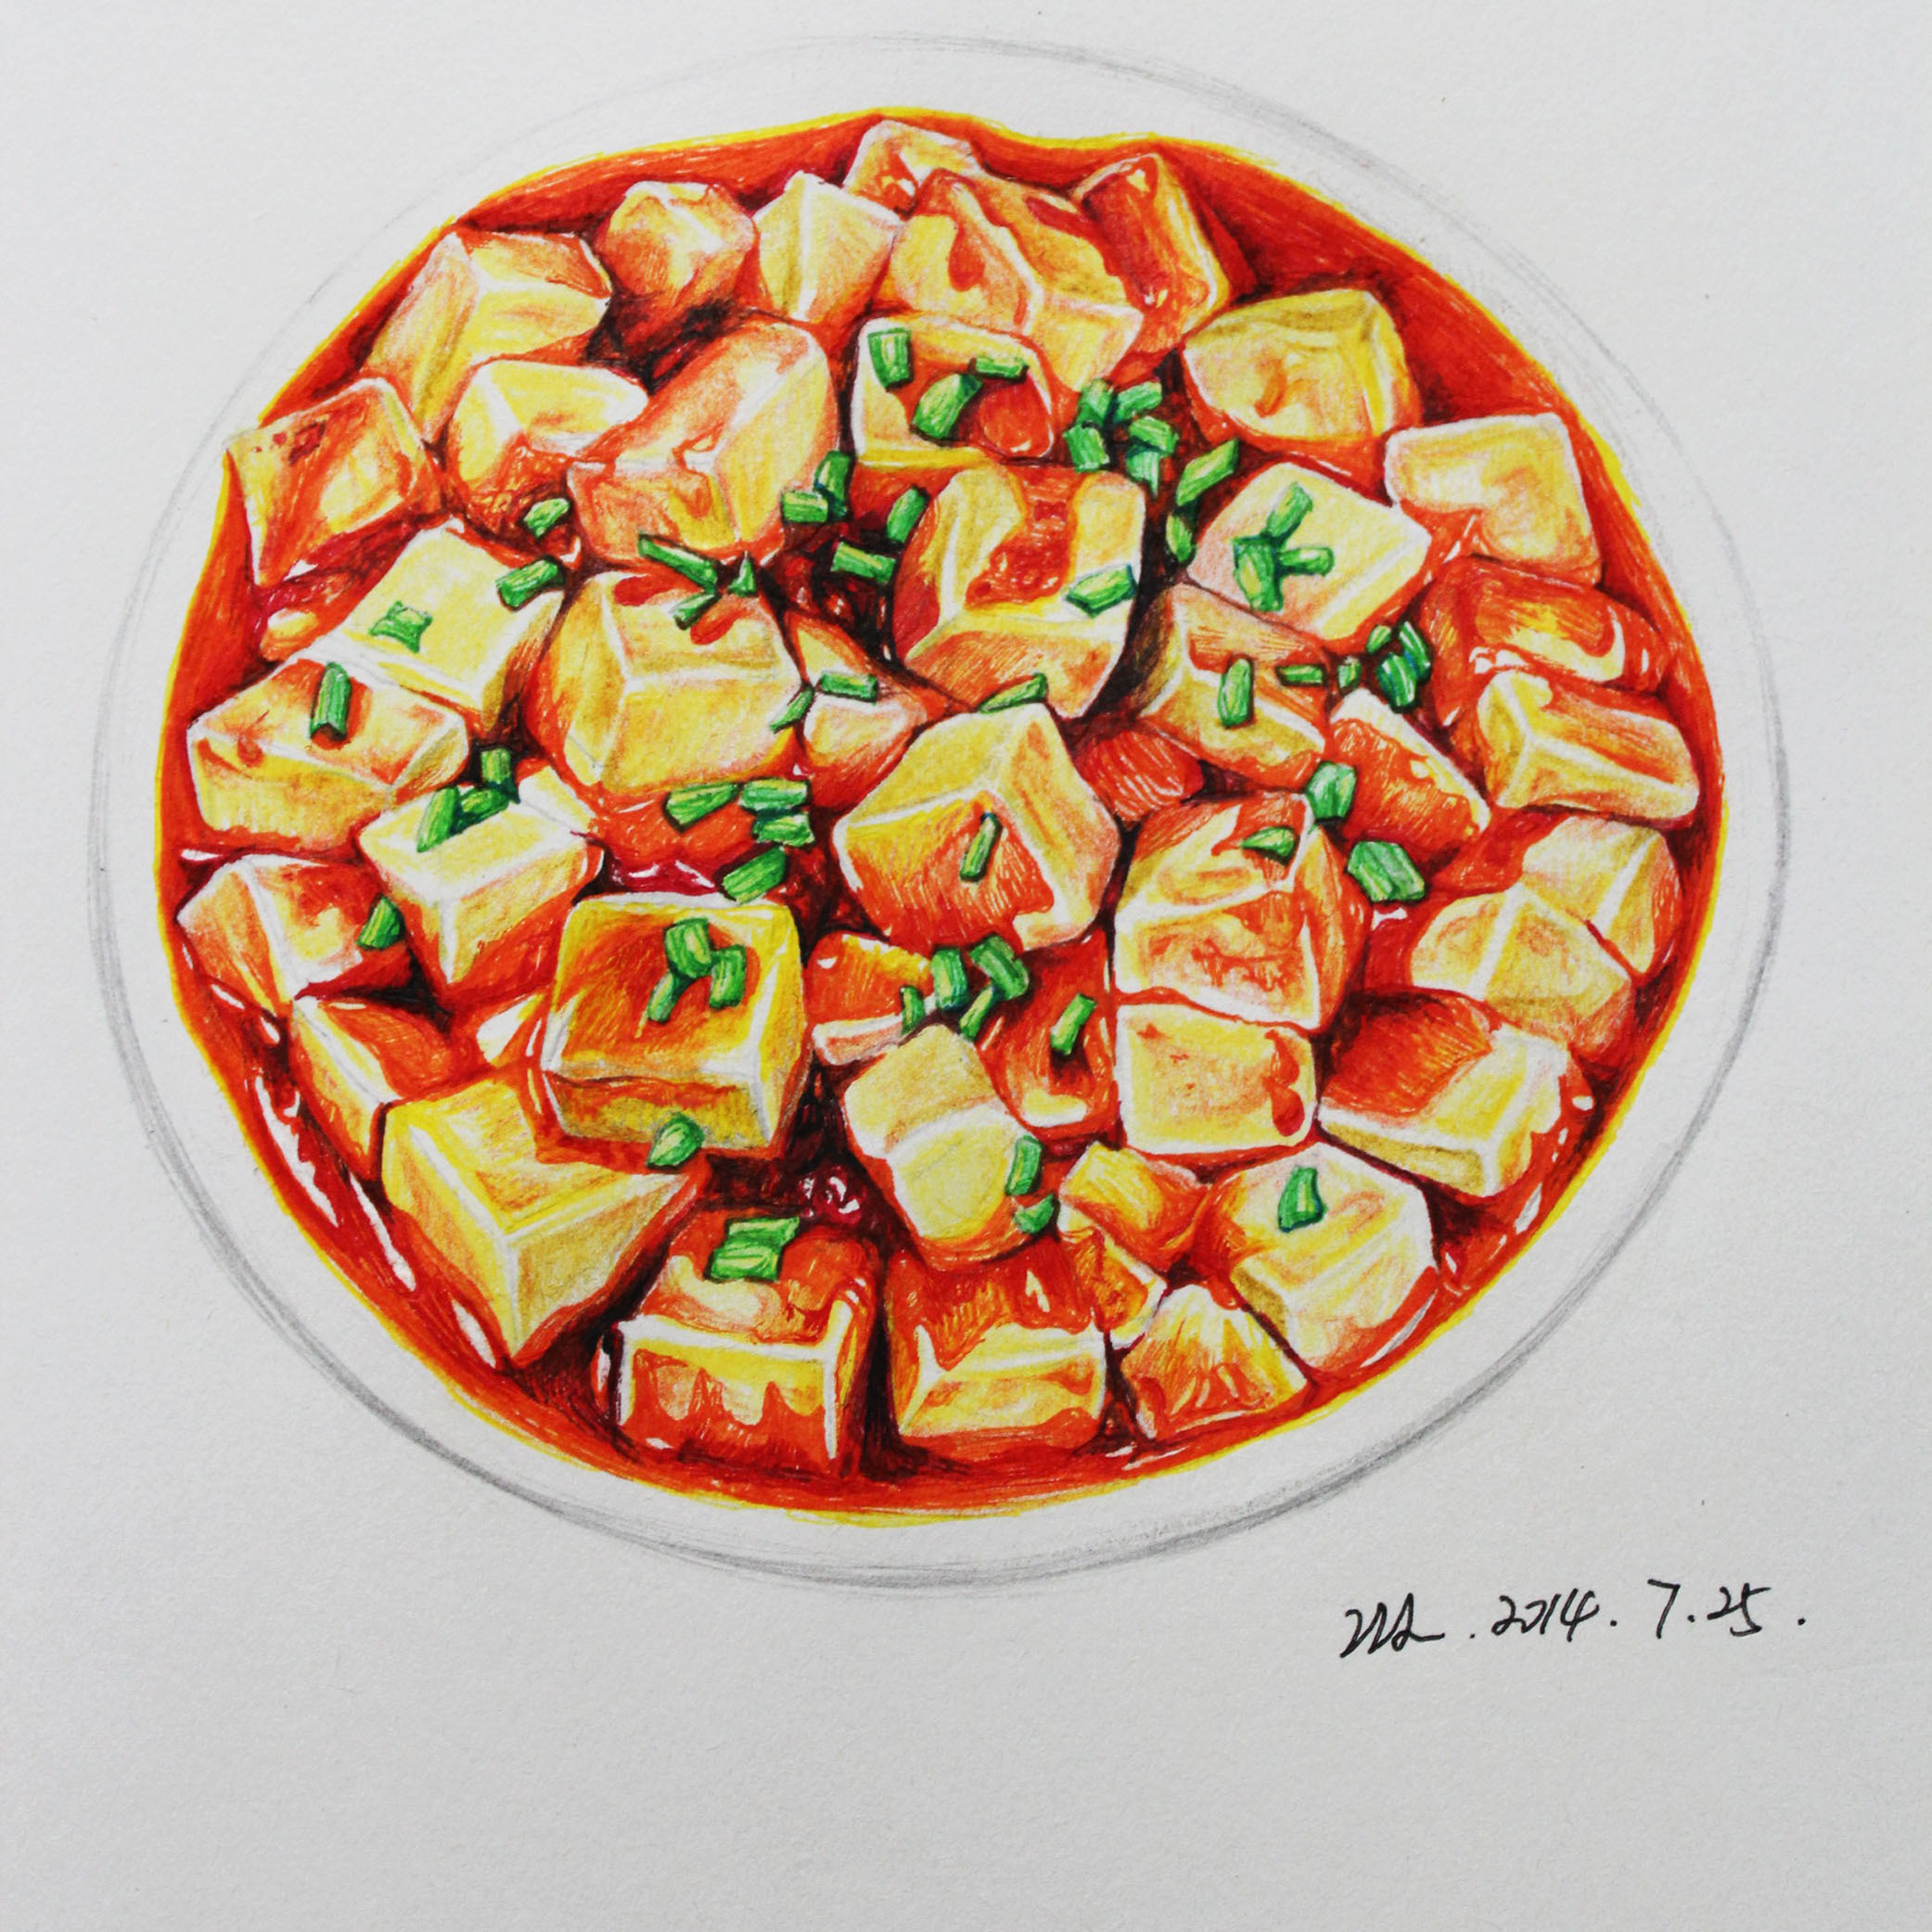 麻婆豆腐照片 手绘画图片